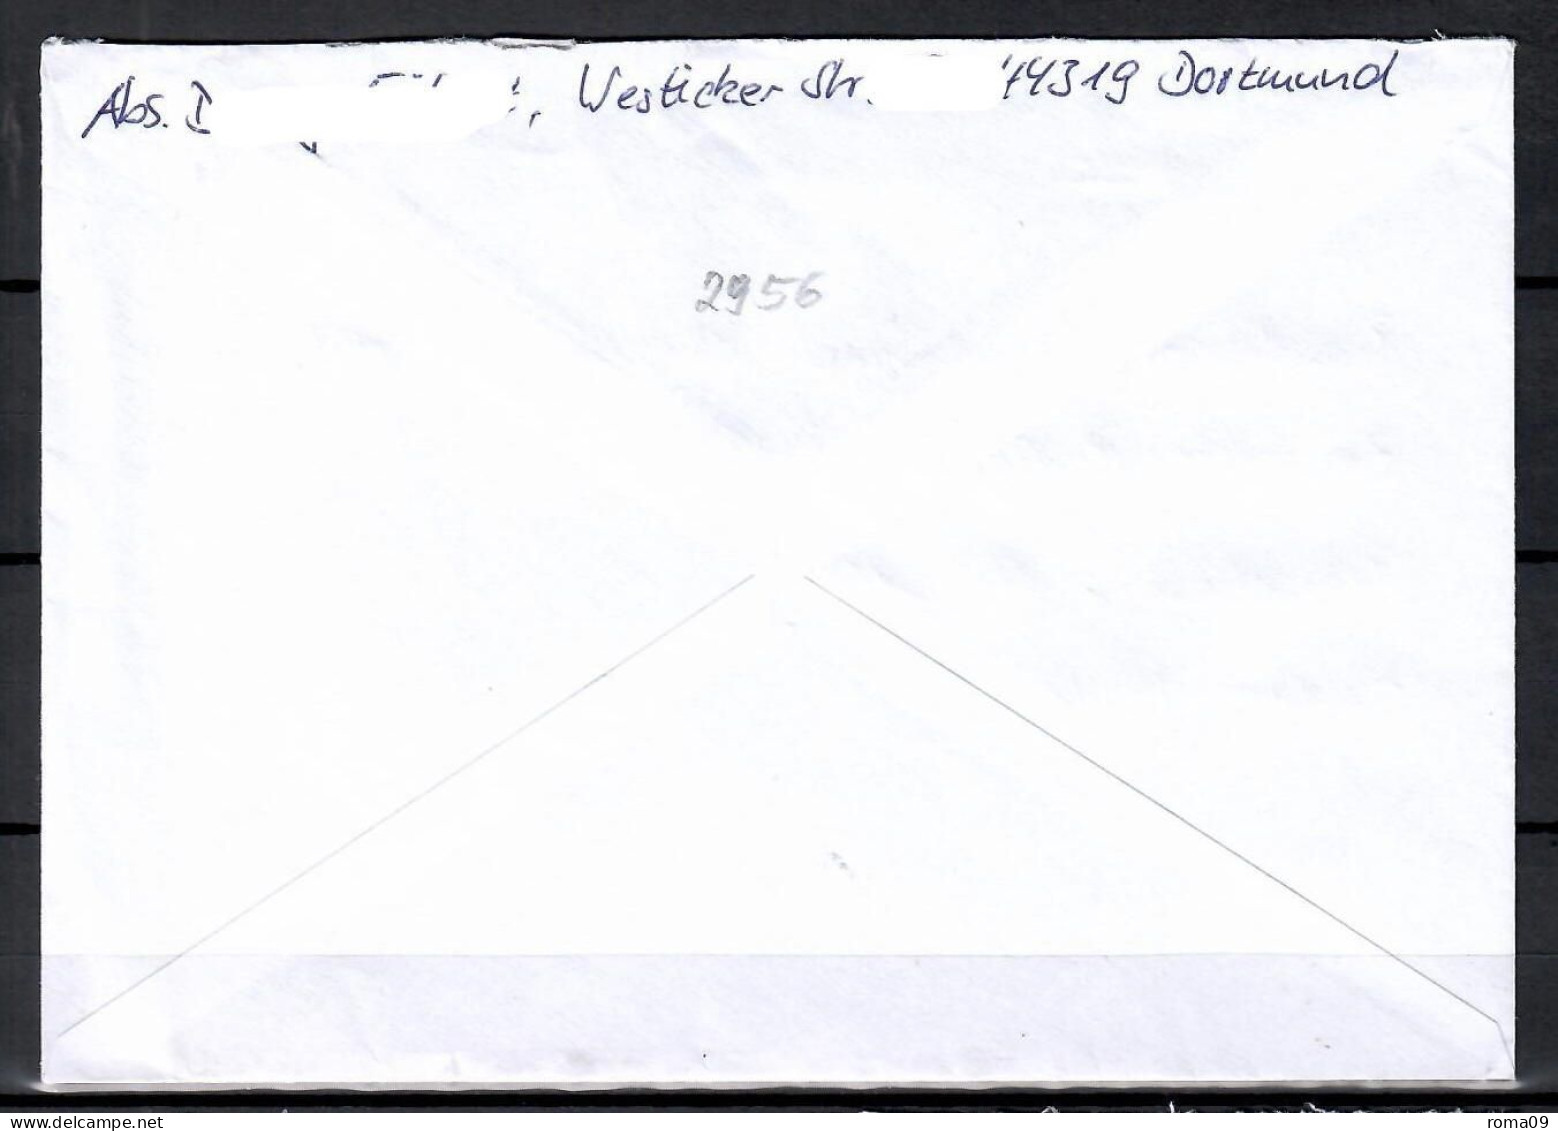 MiNr. 2956; 100 J. Deutsche Nationalbibliothek Auf Portoger. Brief Von BZ 44 Nach Halle/Saale; B-878 - Covers & Documents